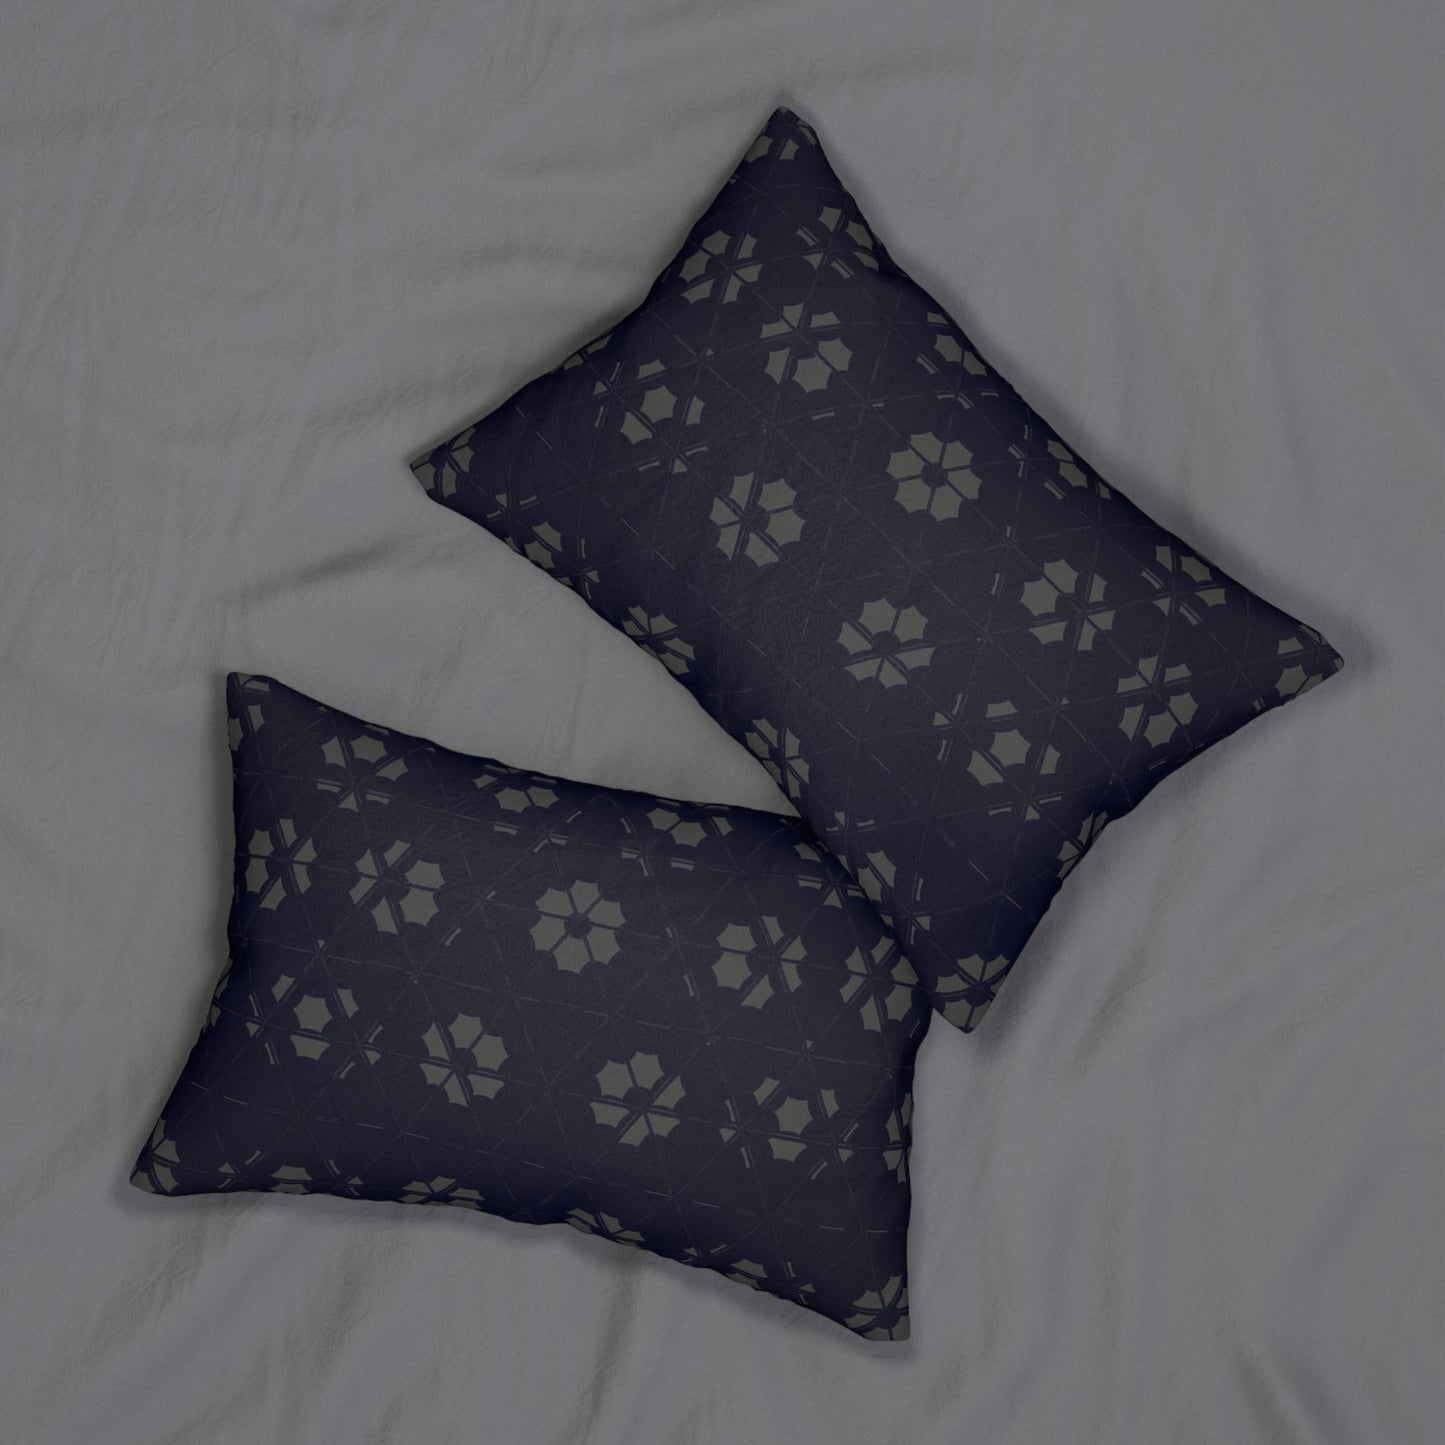 Spun Polyester Lumbar Pillow - 20" × 14"